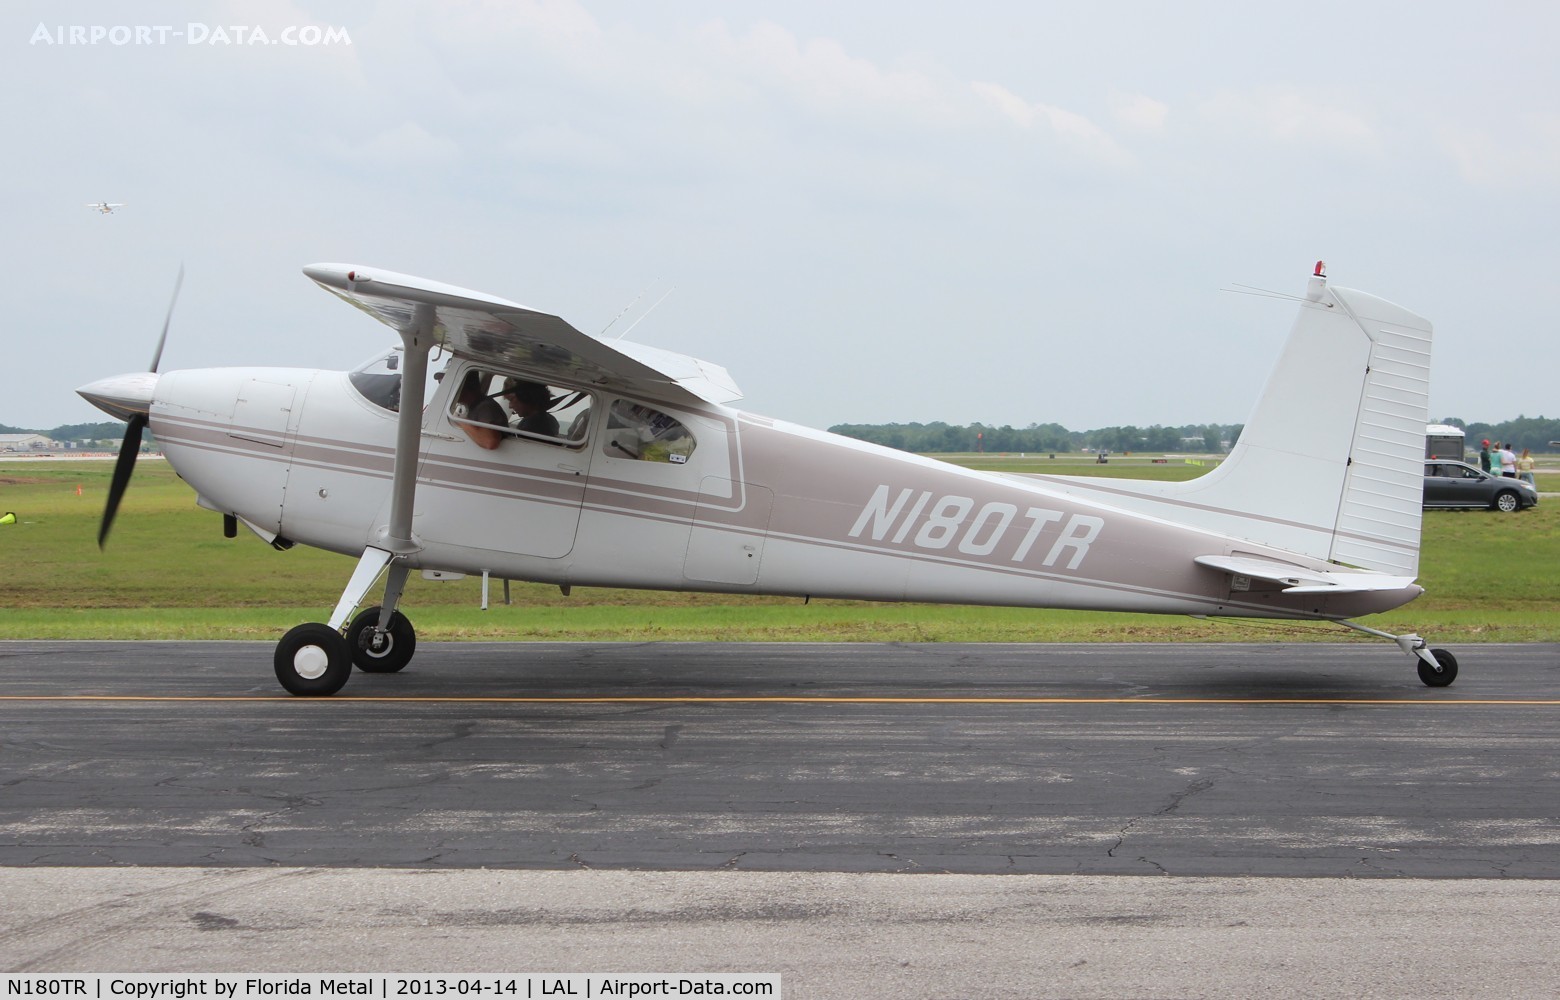 N180TR, 1956 Cessna 180A C/N 50124, Cessna 180A